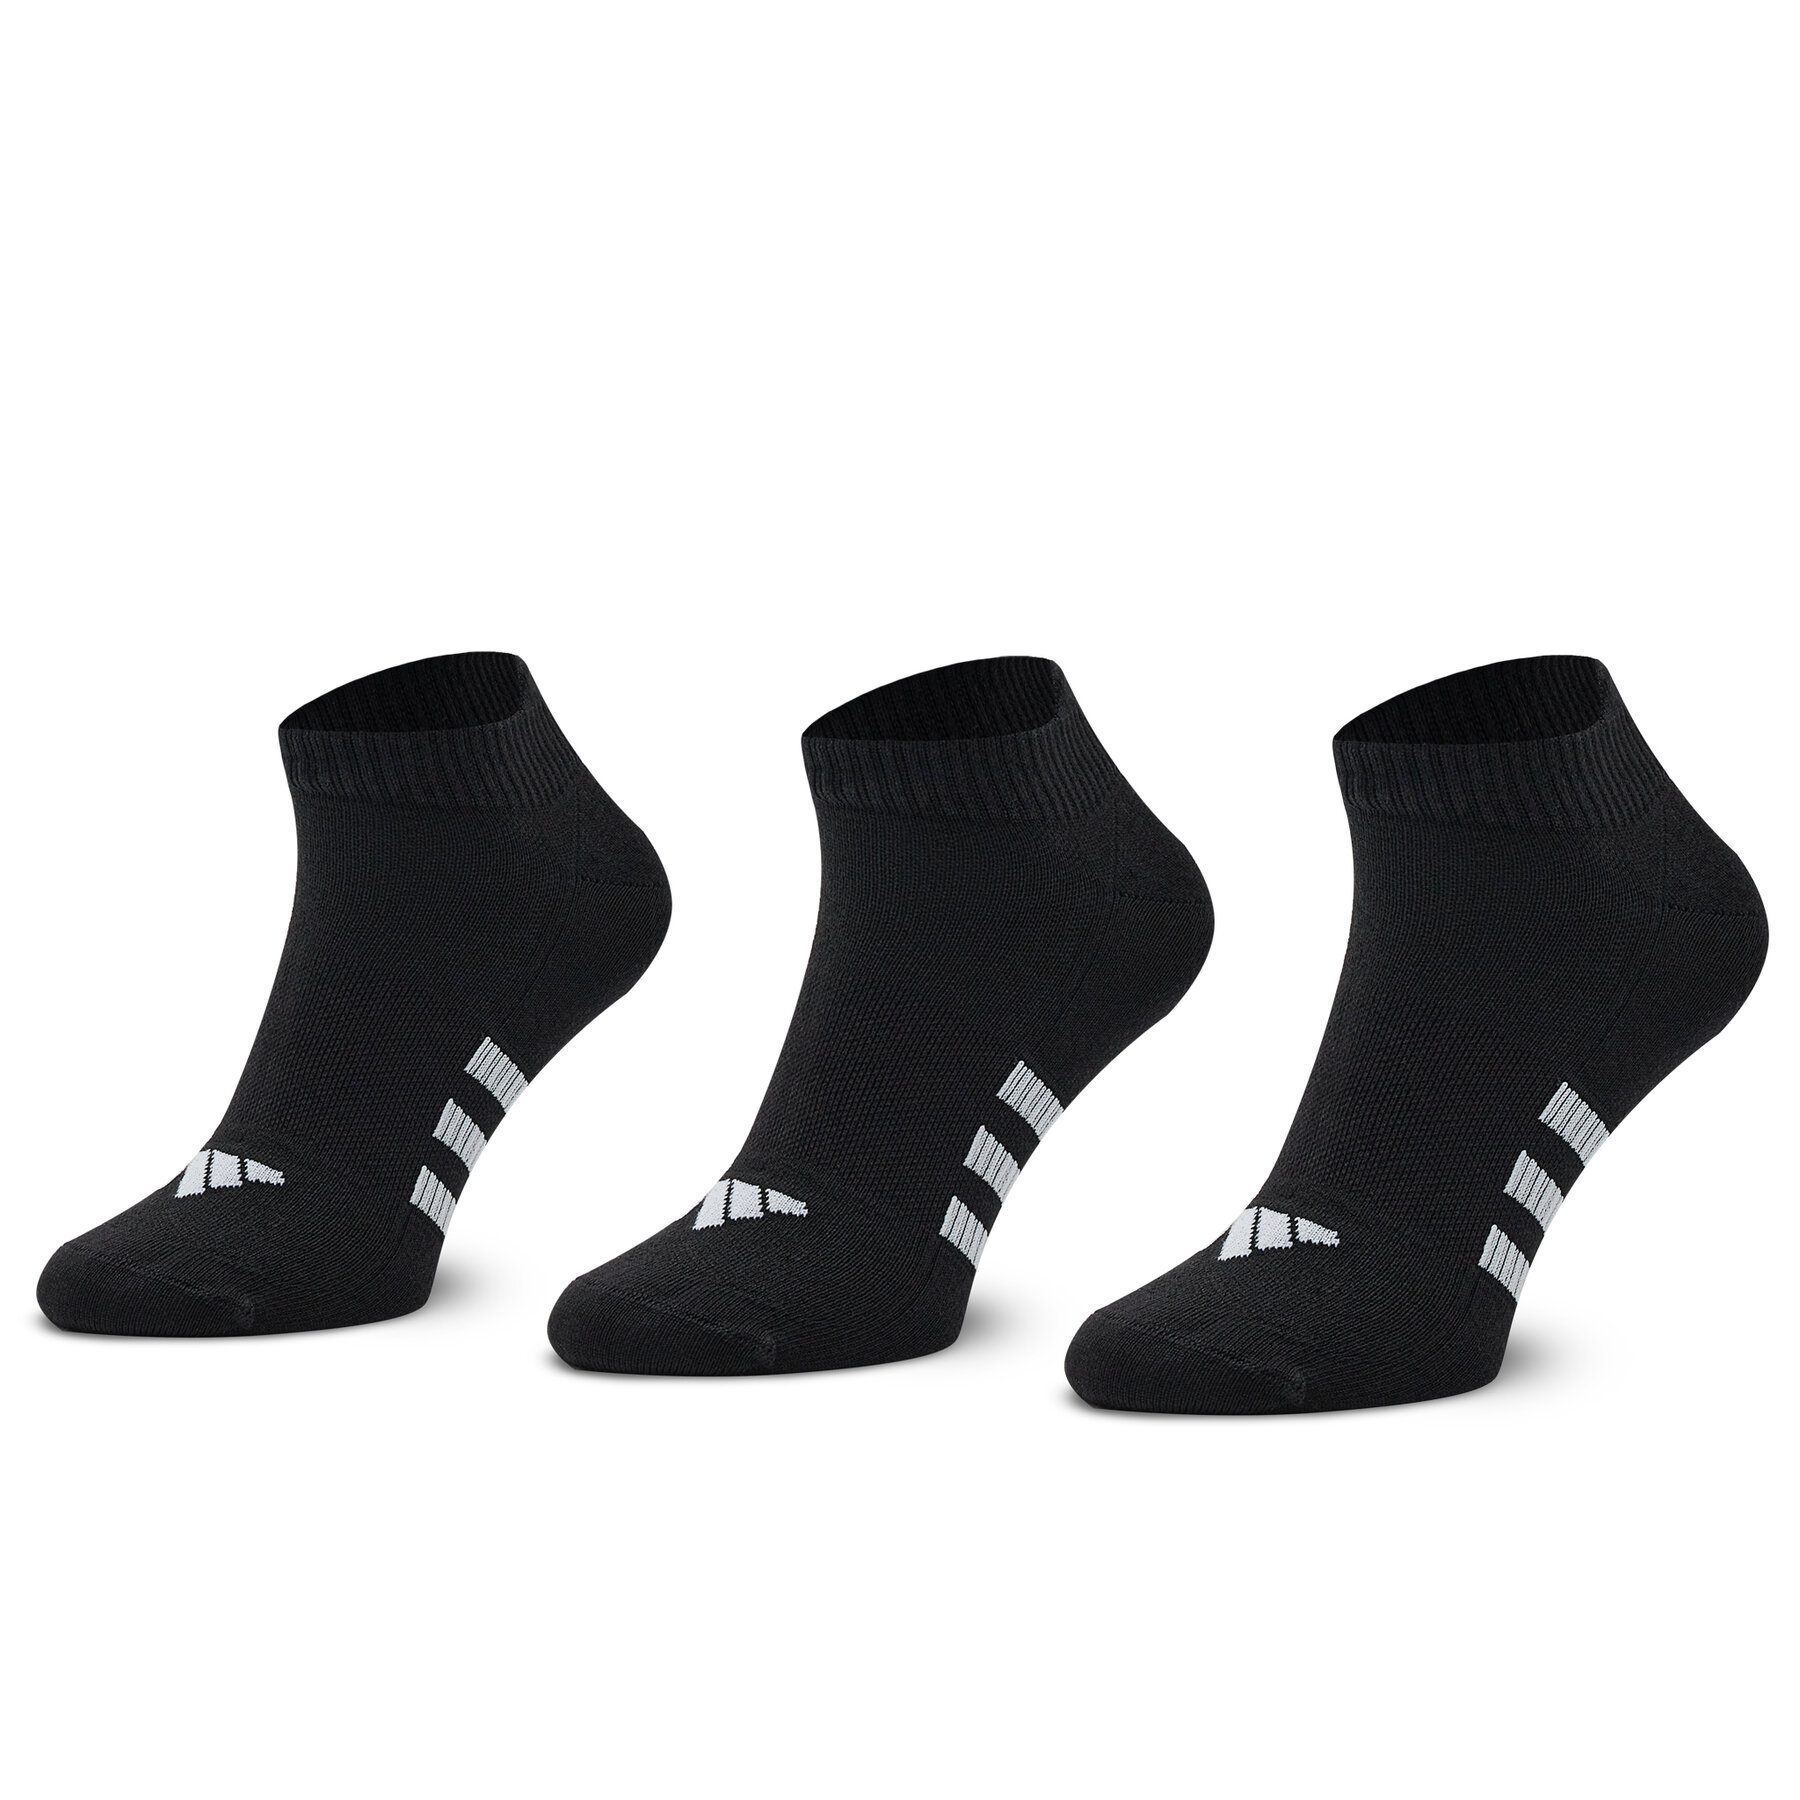 Vyriškų trumpų kojinių komplektas (3 poros) adidas Light IC9529 Black